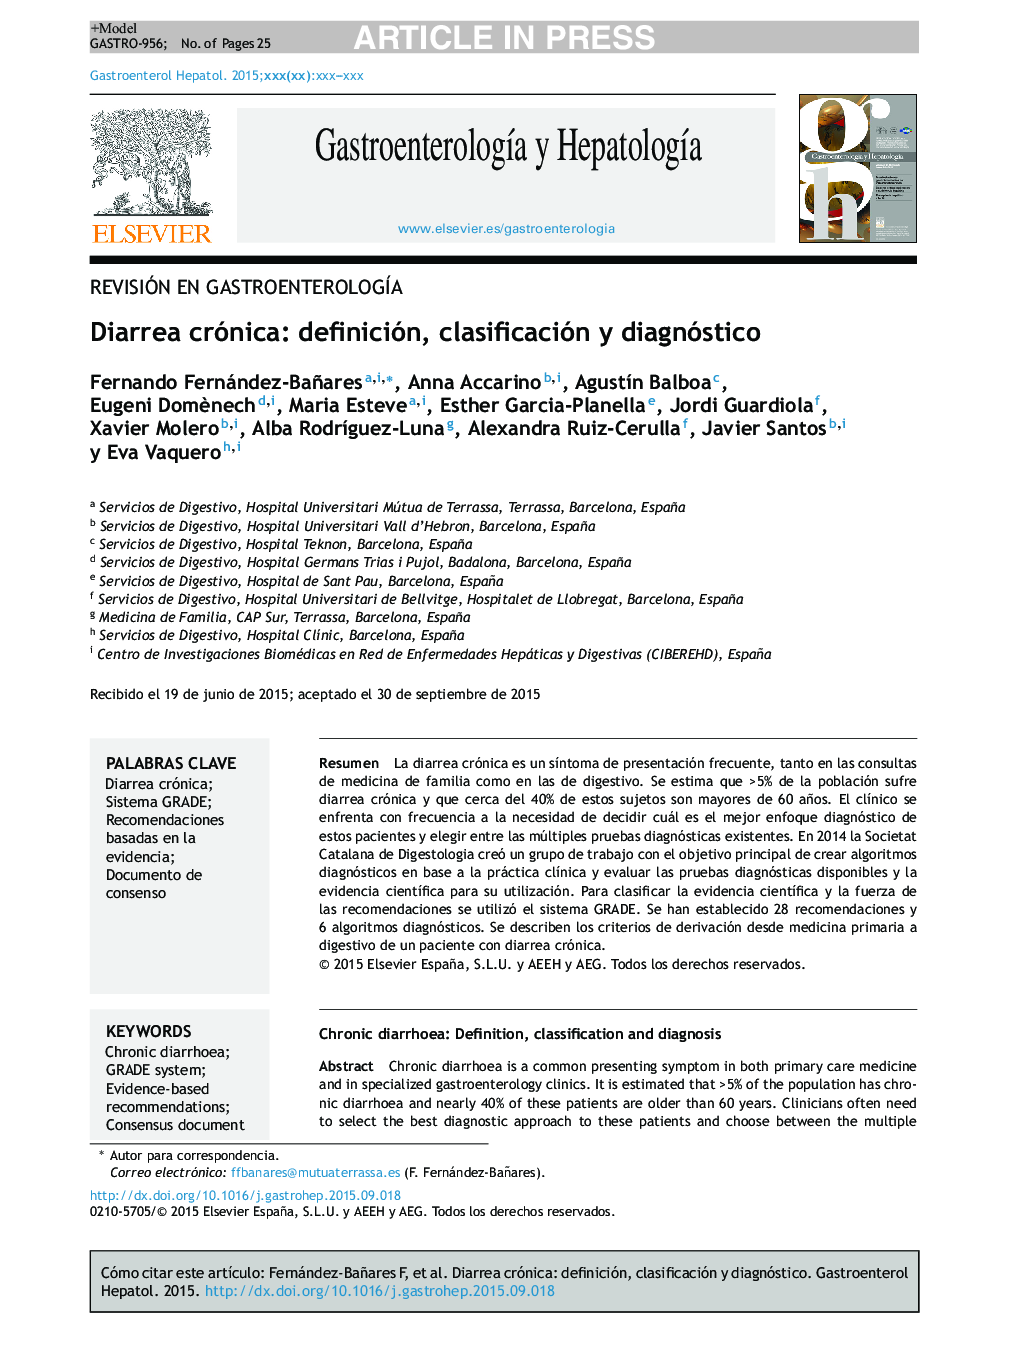 Diarrea crónica: definición, clasificación y diagnóstico